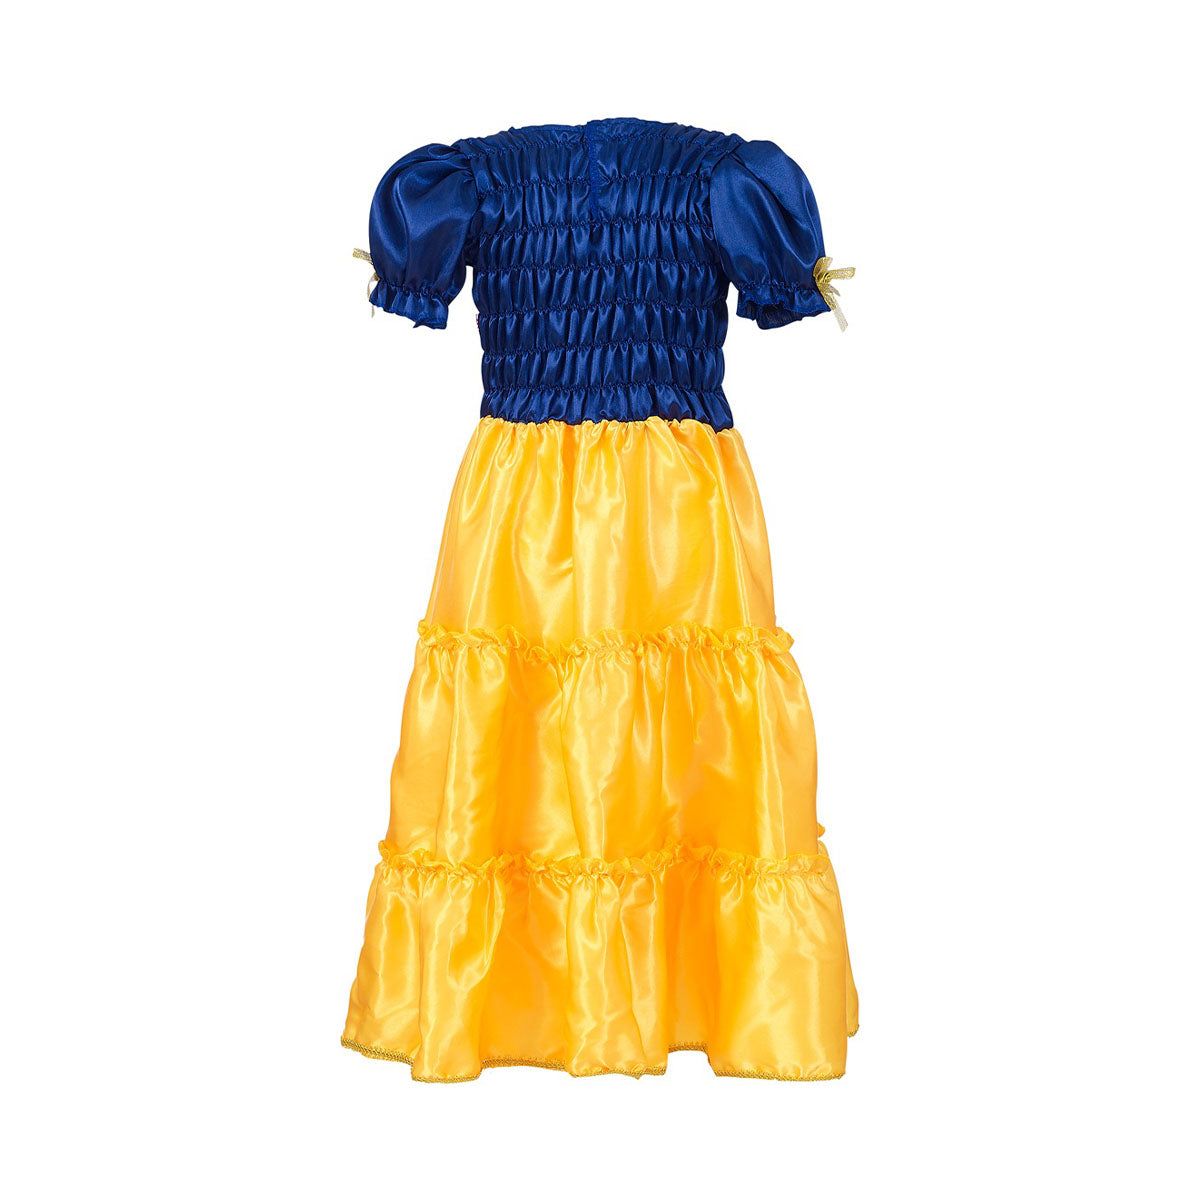 Is jouw dochter gek op verkleden? Dan is deze Selina jurk van het Nederlandse merk Souza! een echte must have. Met deze mooie jurk aan is jouw kleintje net een echte prinses! Deze mooie prinsessenjurk is perfect voor verkleedpartijtjes, (halloween)feestjes en toneelstukken. VanZus